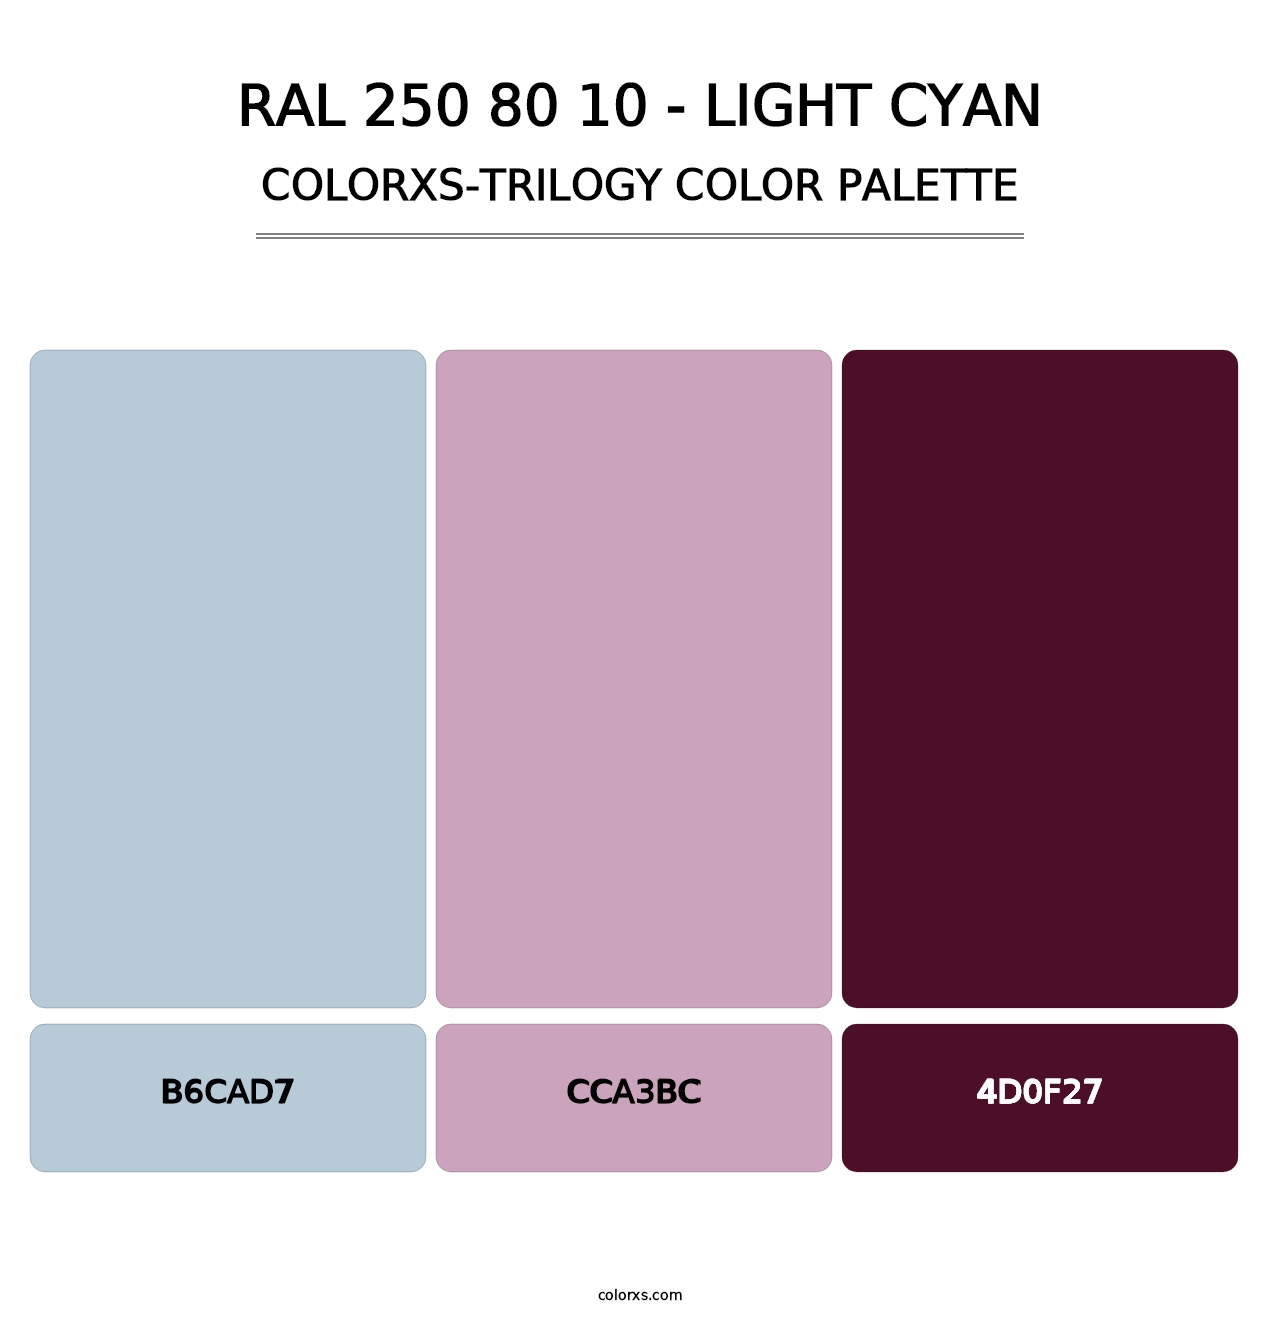 RAL 250 80 10 - Light Cyan - Colorxs Trilogy Palette